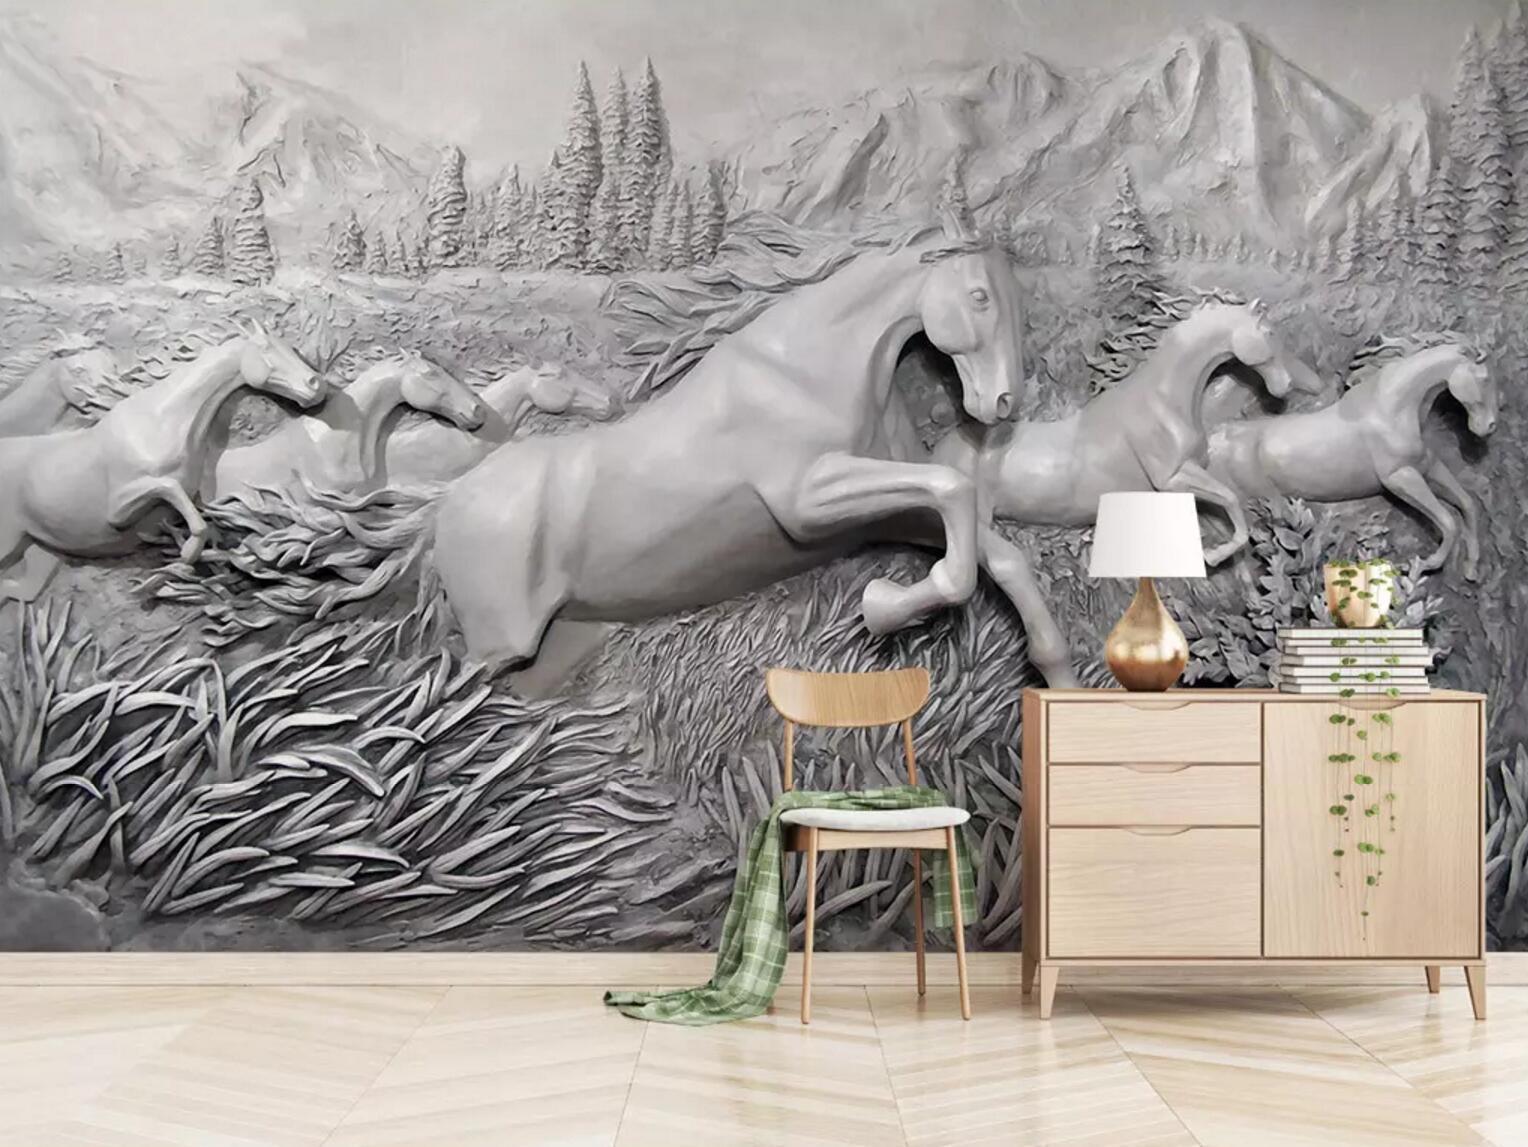 3D Sculpture Horse 246 Wallpaper AJ Wallpaper 